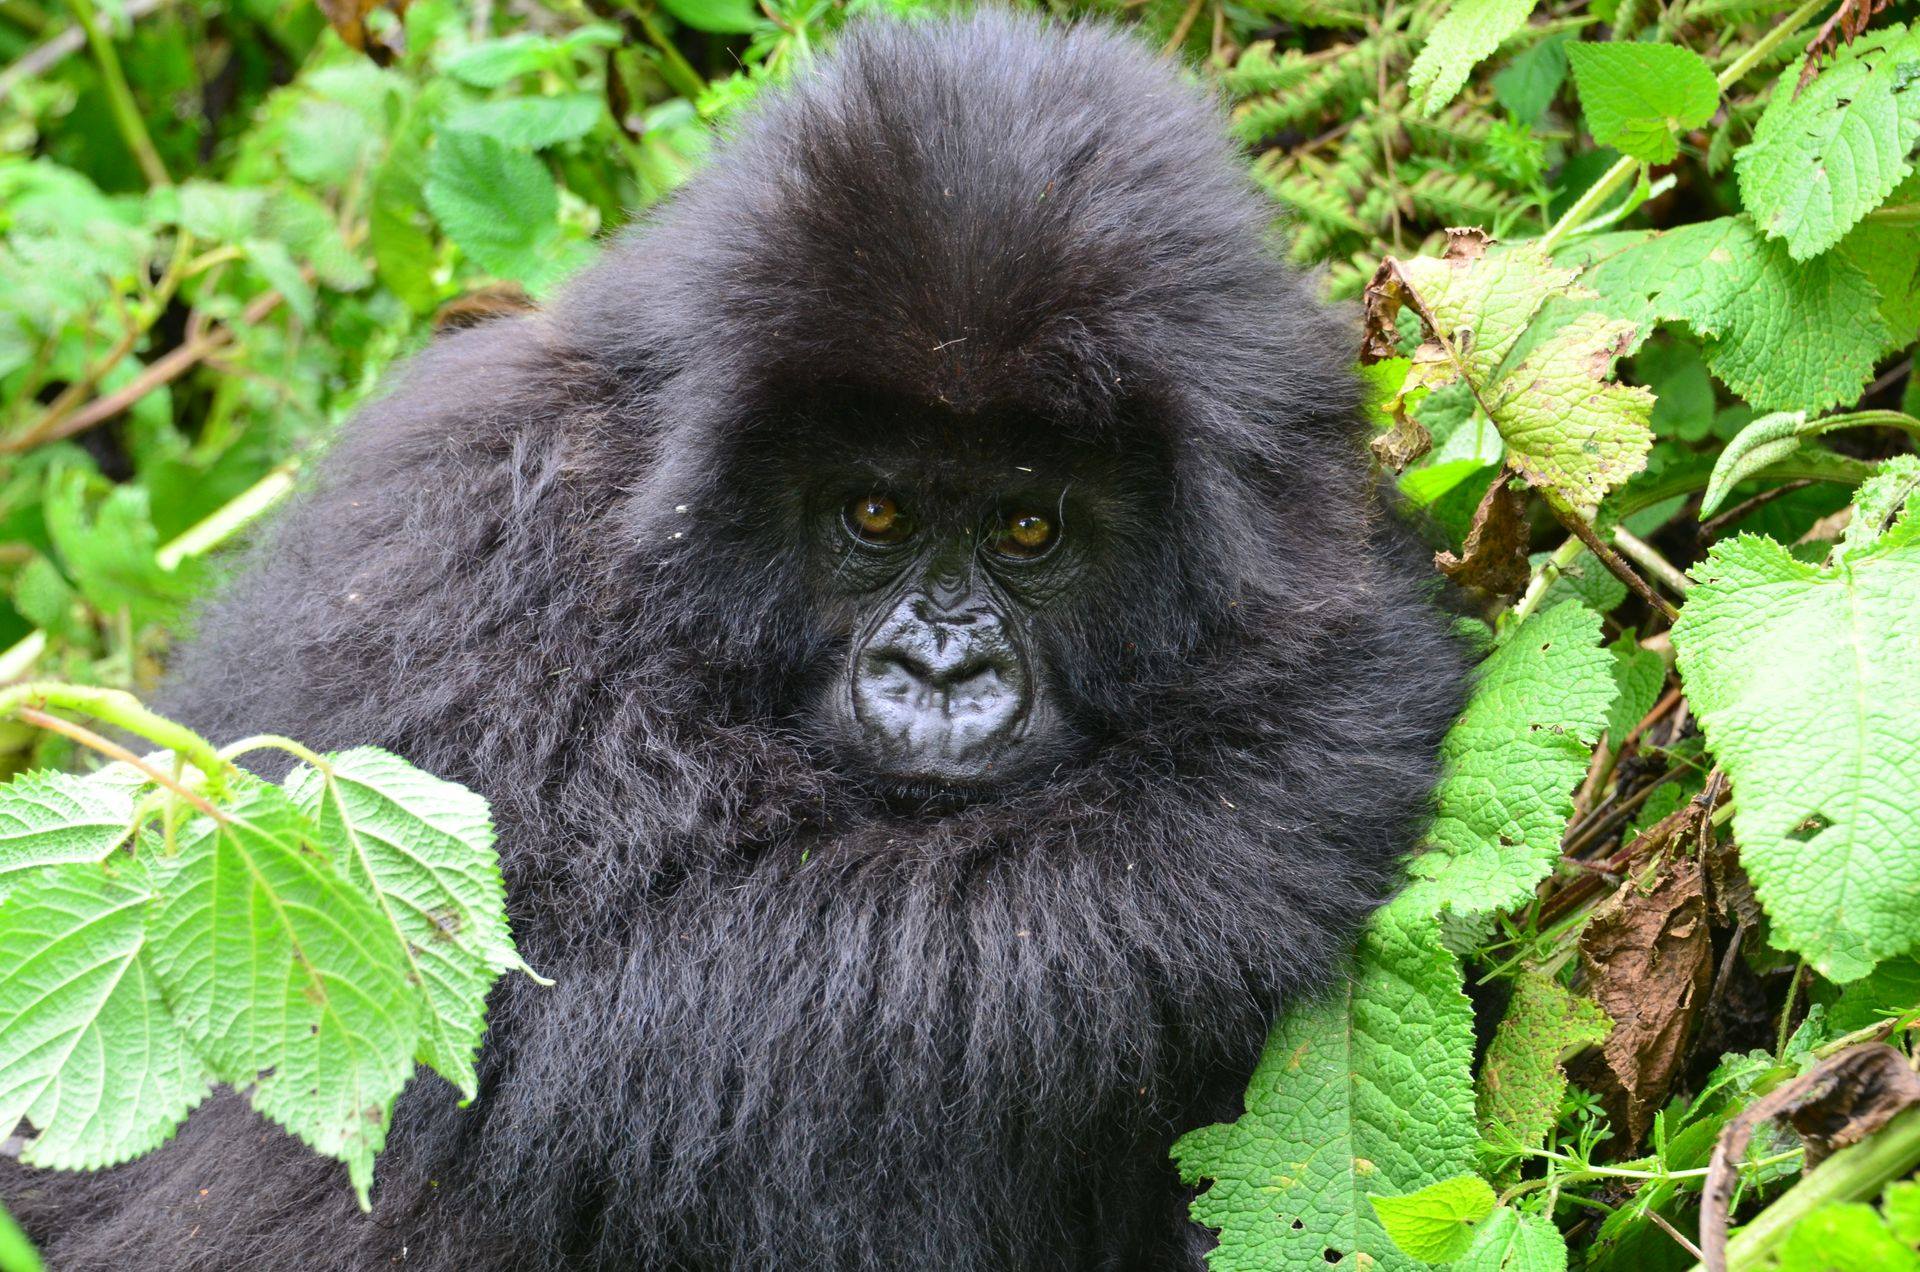 What is the minimum age for gorilla trekking in Uganda?